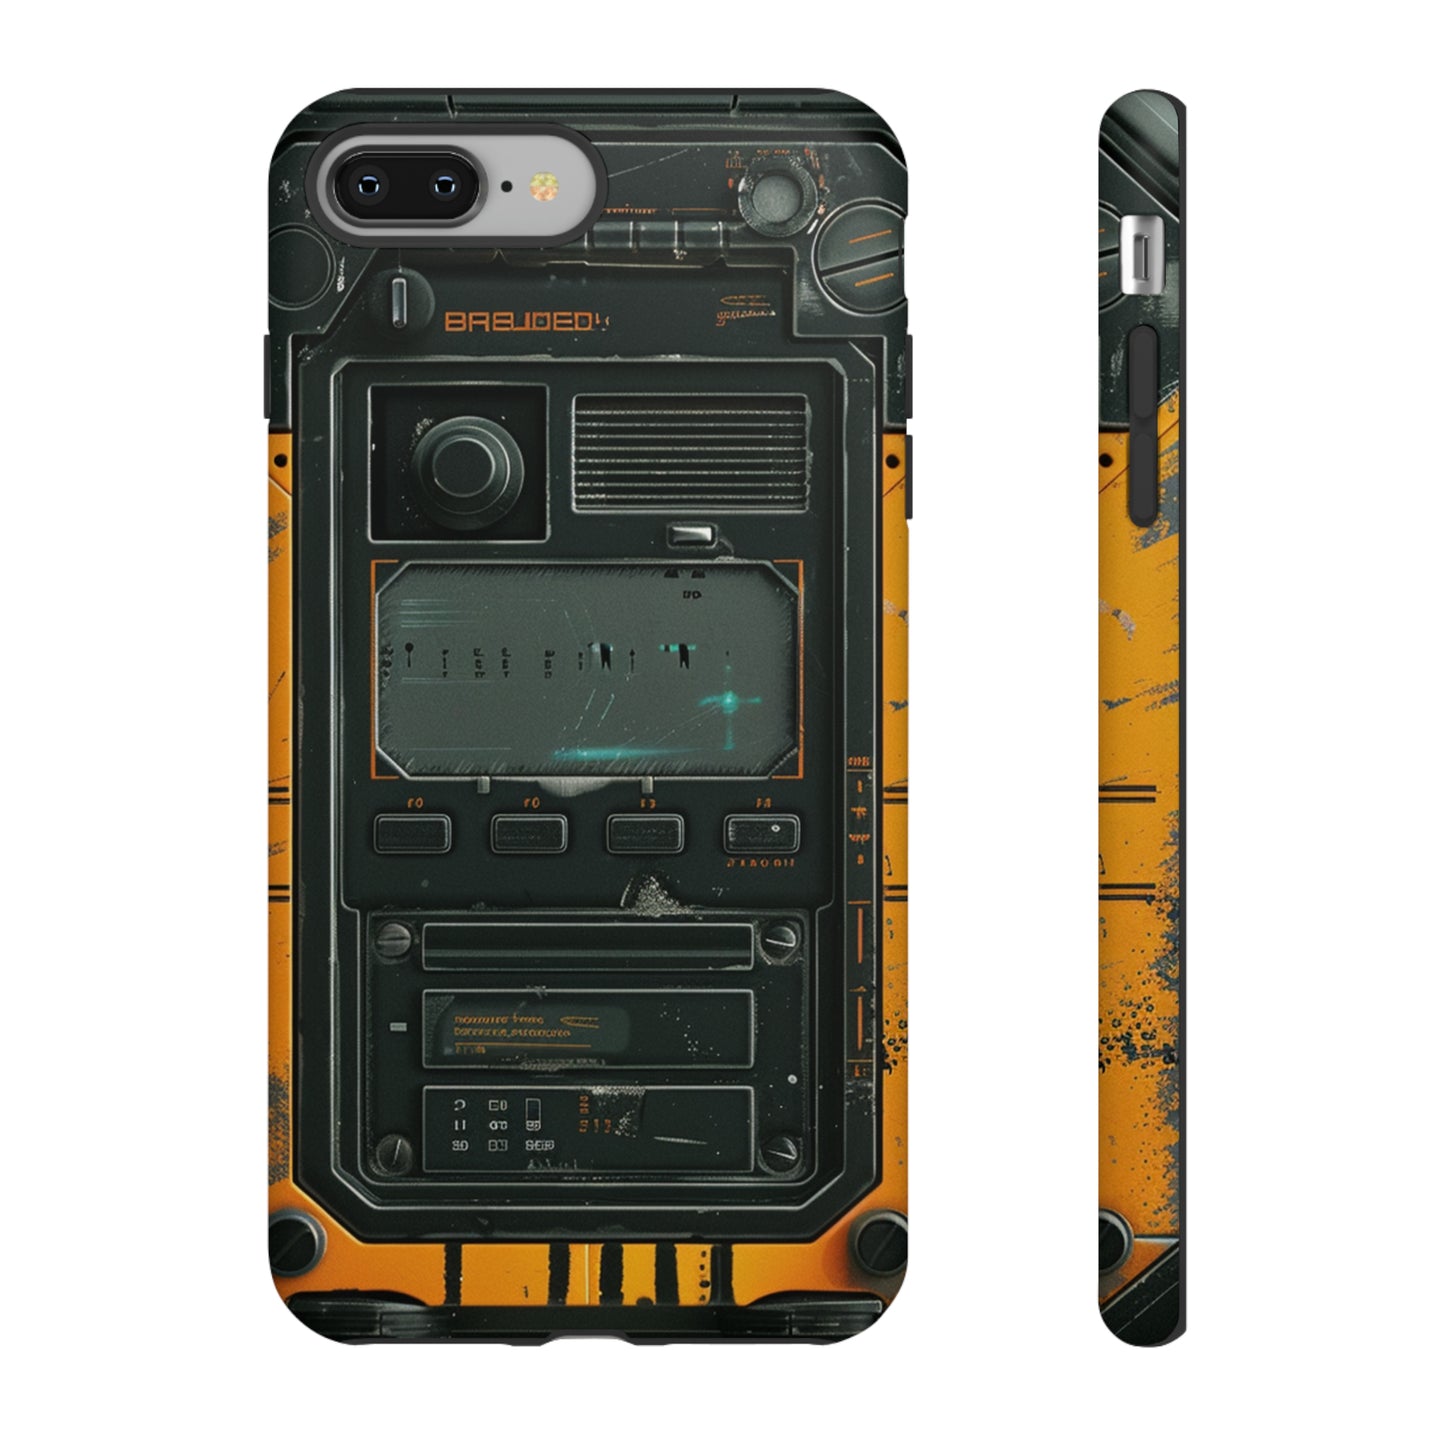 Cyberpunk Sci-Fi Techno Communicator Phone Case